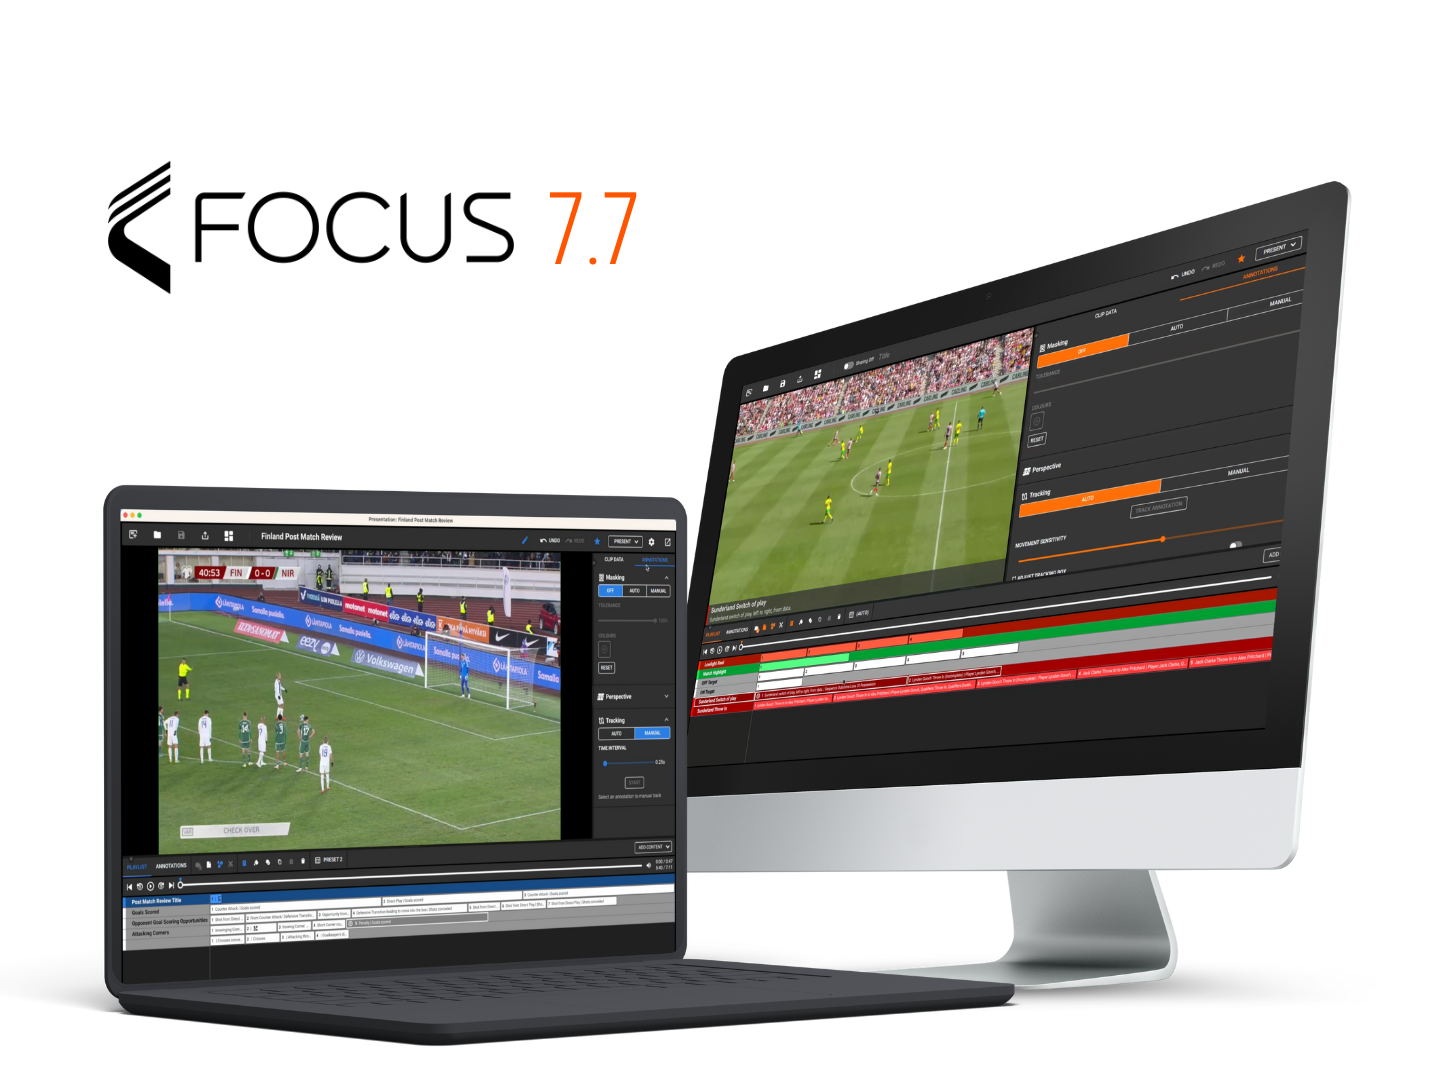 Различные устройства, включая ноутбук, настольный компьютер и смартфон, отображающие интерфейсы футбольного анализа с платформы Focus 7.7. Устройства расположены по кругу на оранжевом фоне.